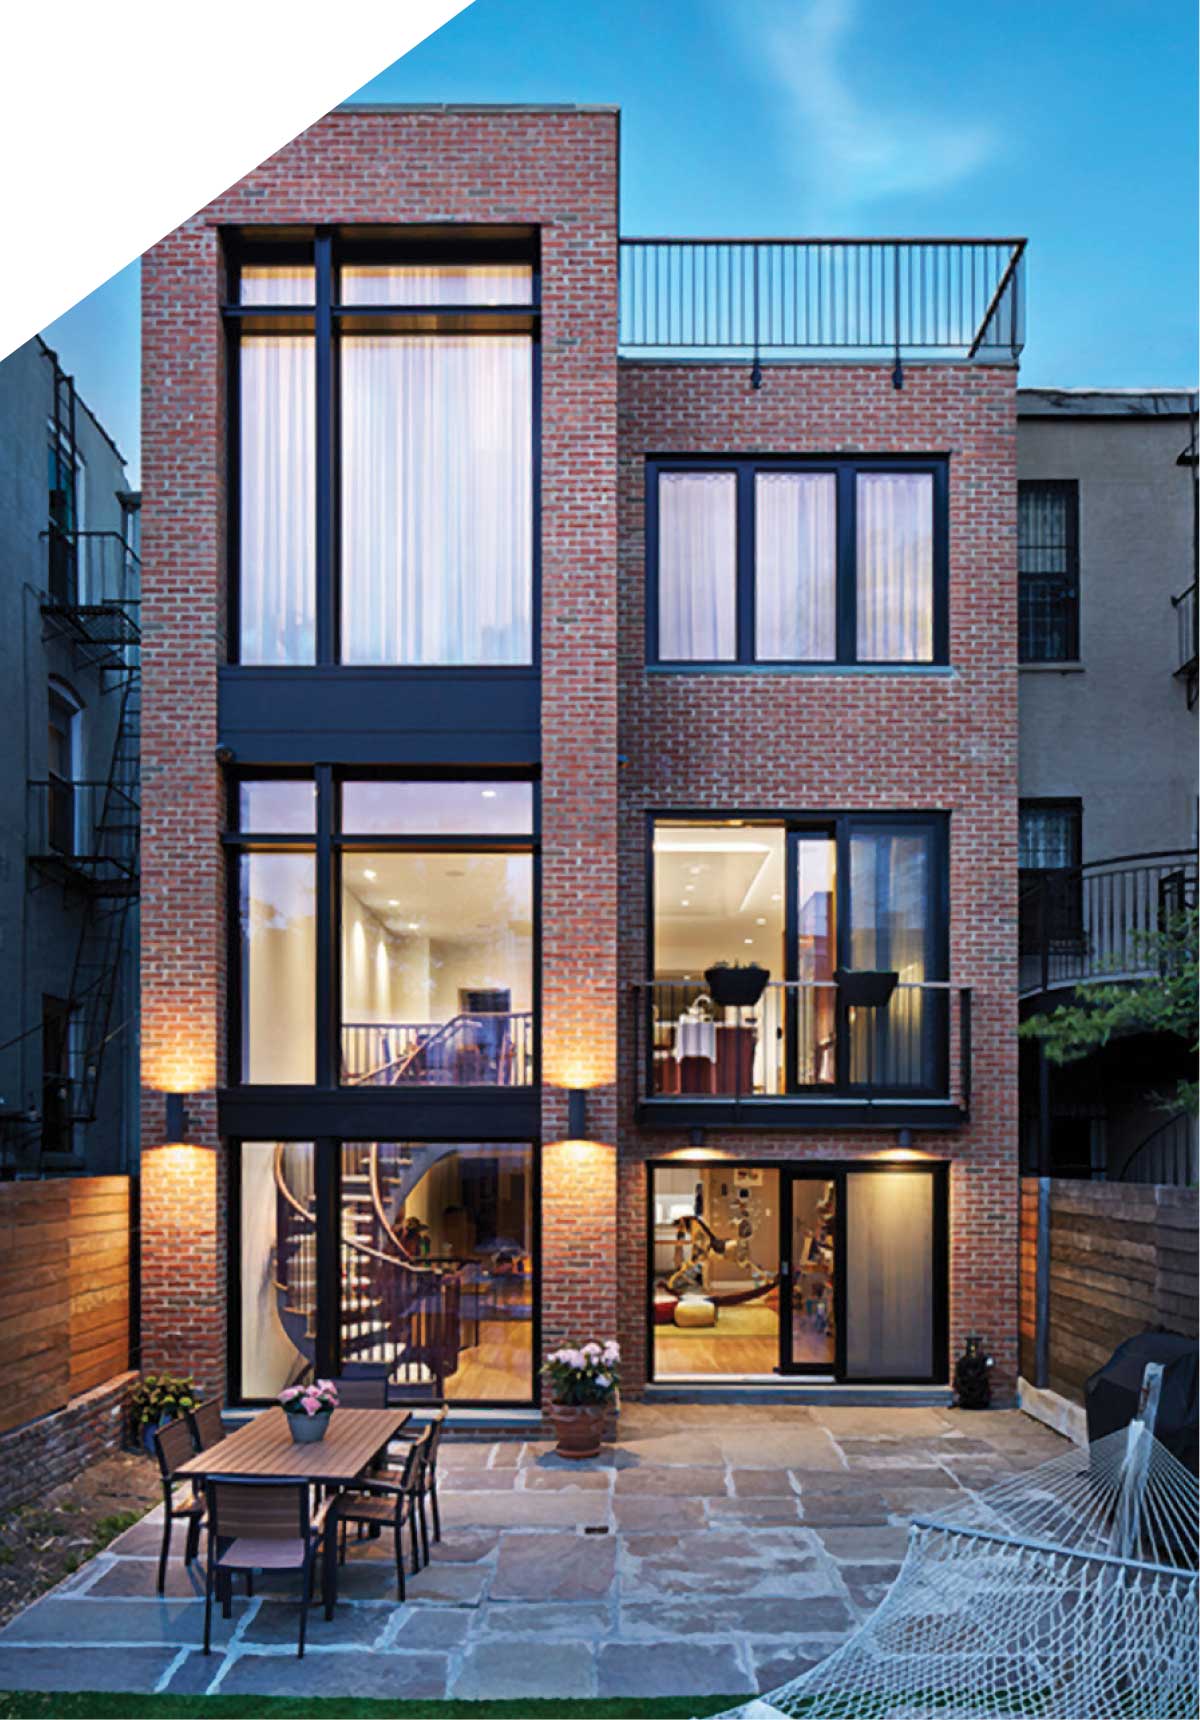 Passive House design entails 